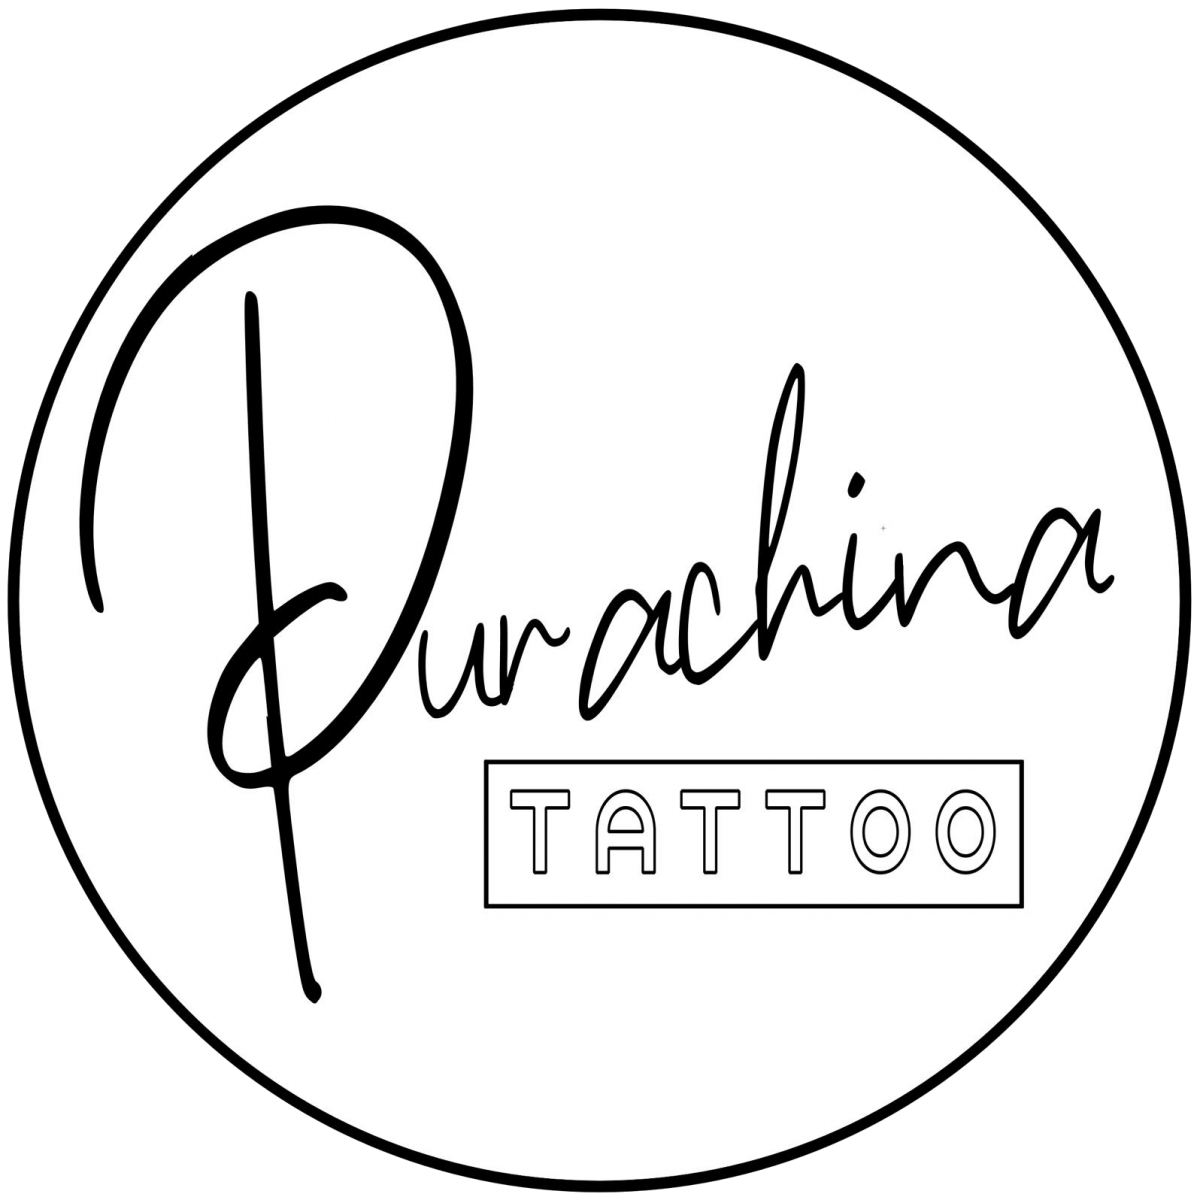 Purachina tattoo